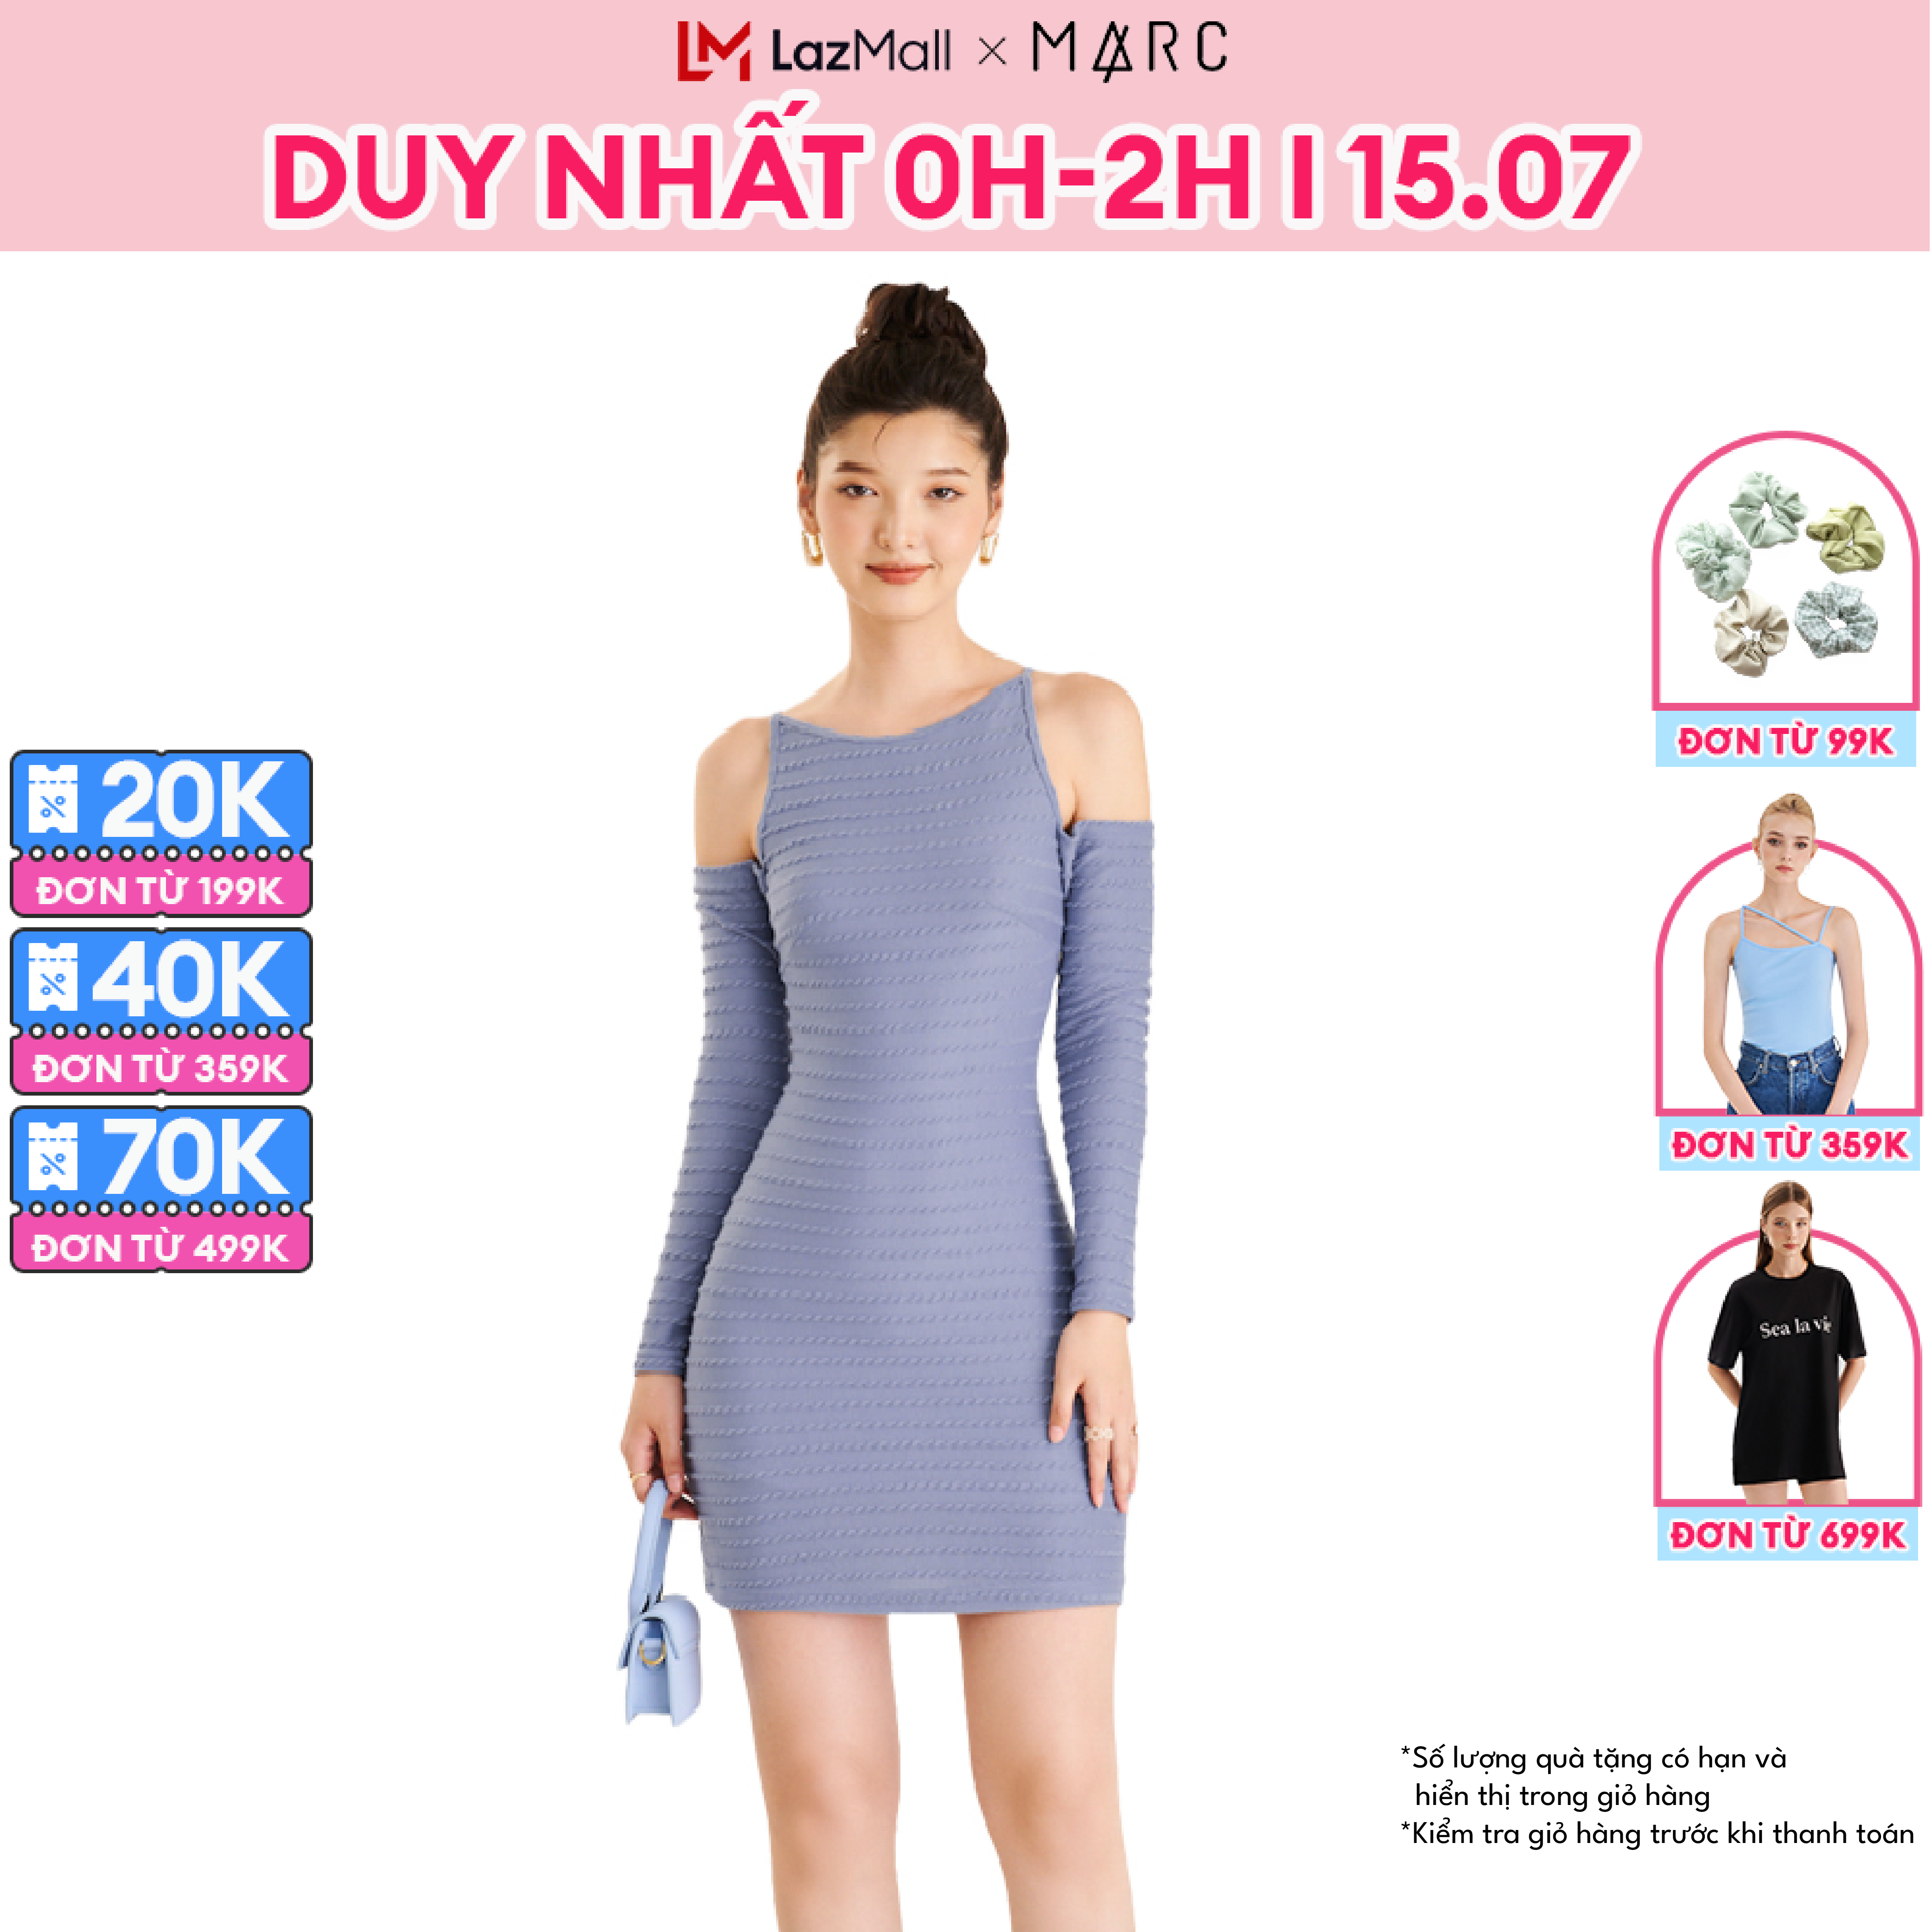 Xưởng đầm váy thiết kế hotgirl và đầm Quảng Châu giá sỉ rẻ tận gốc